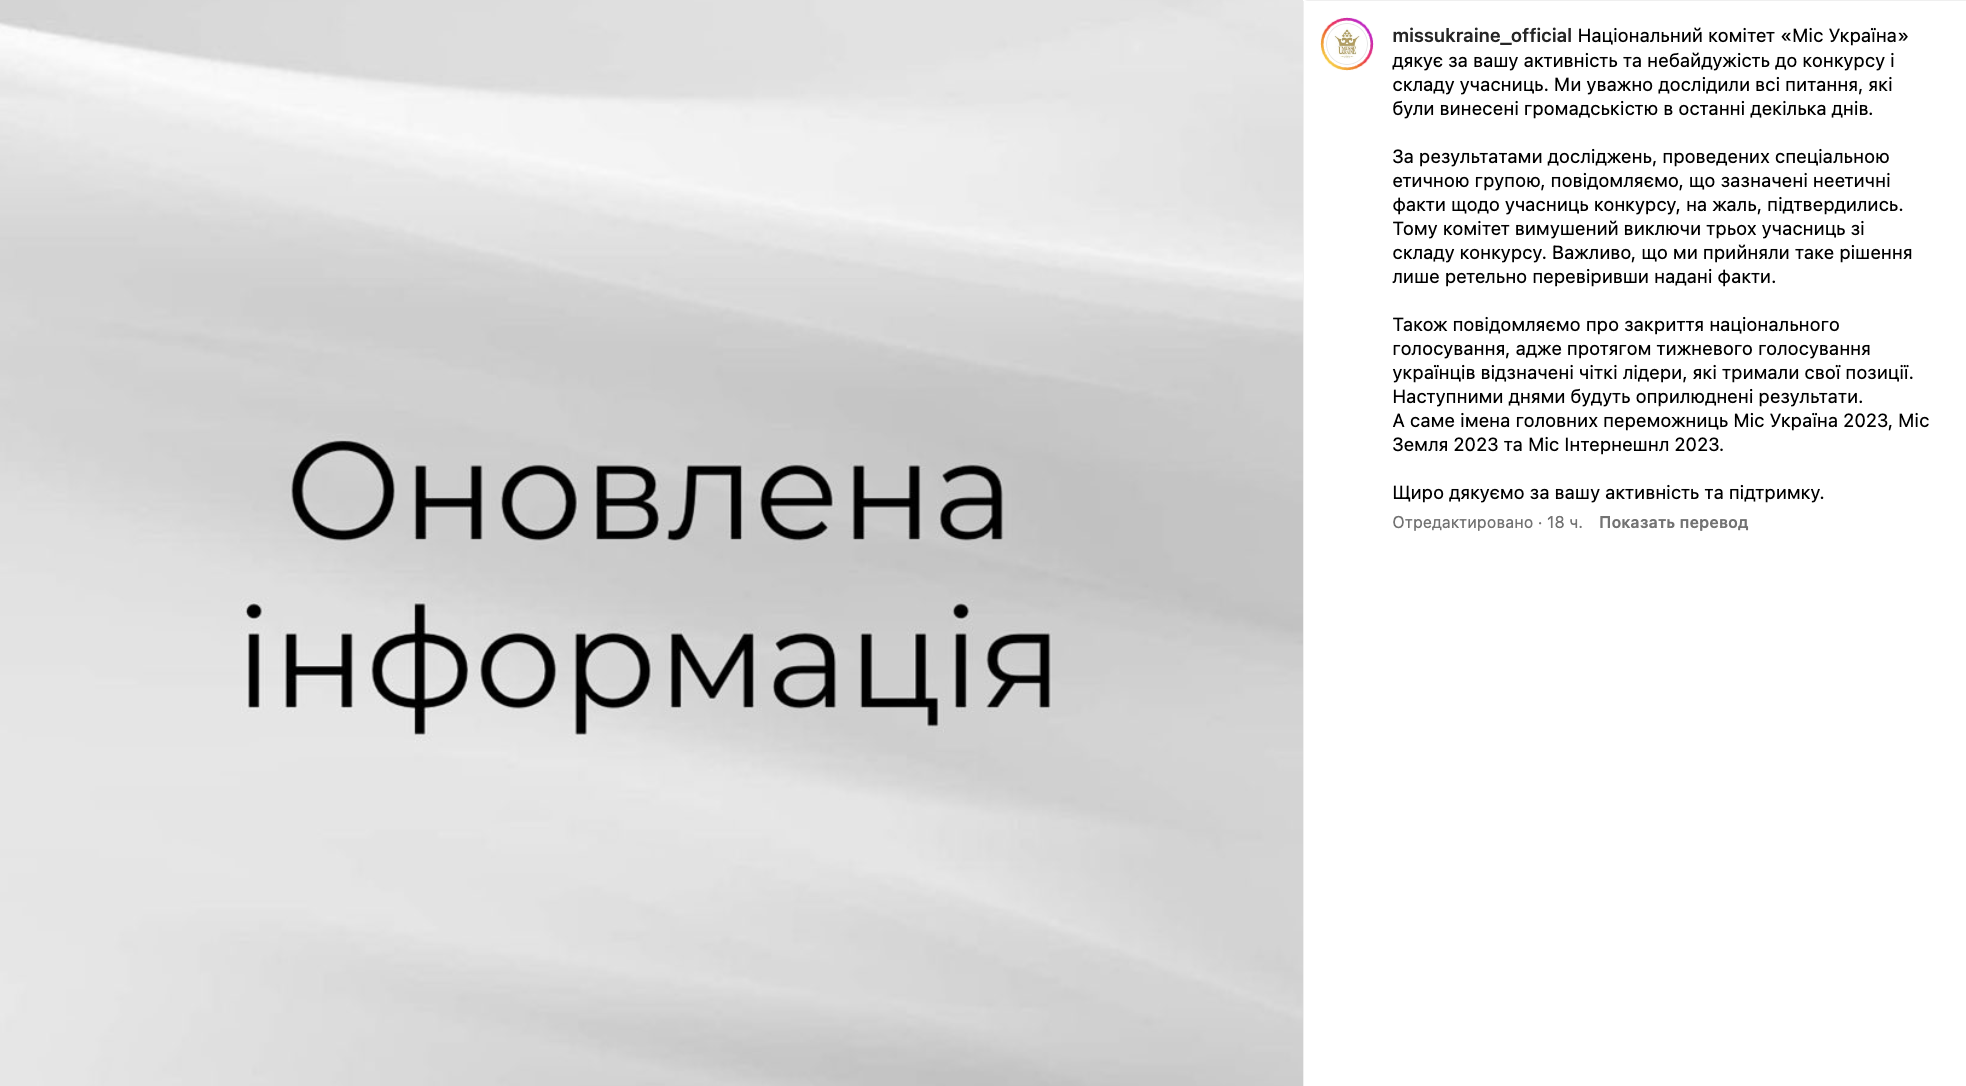 Трех участниц дисквалифицировали за "неэтические" связи с россиянами: скандал на "Мисс Украина 2023" получил продолжение